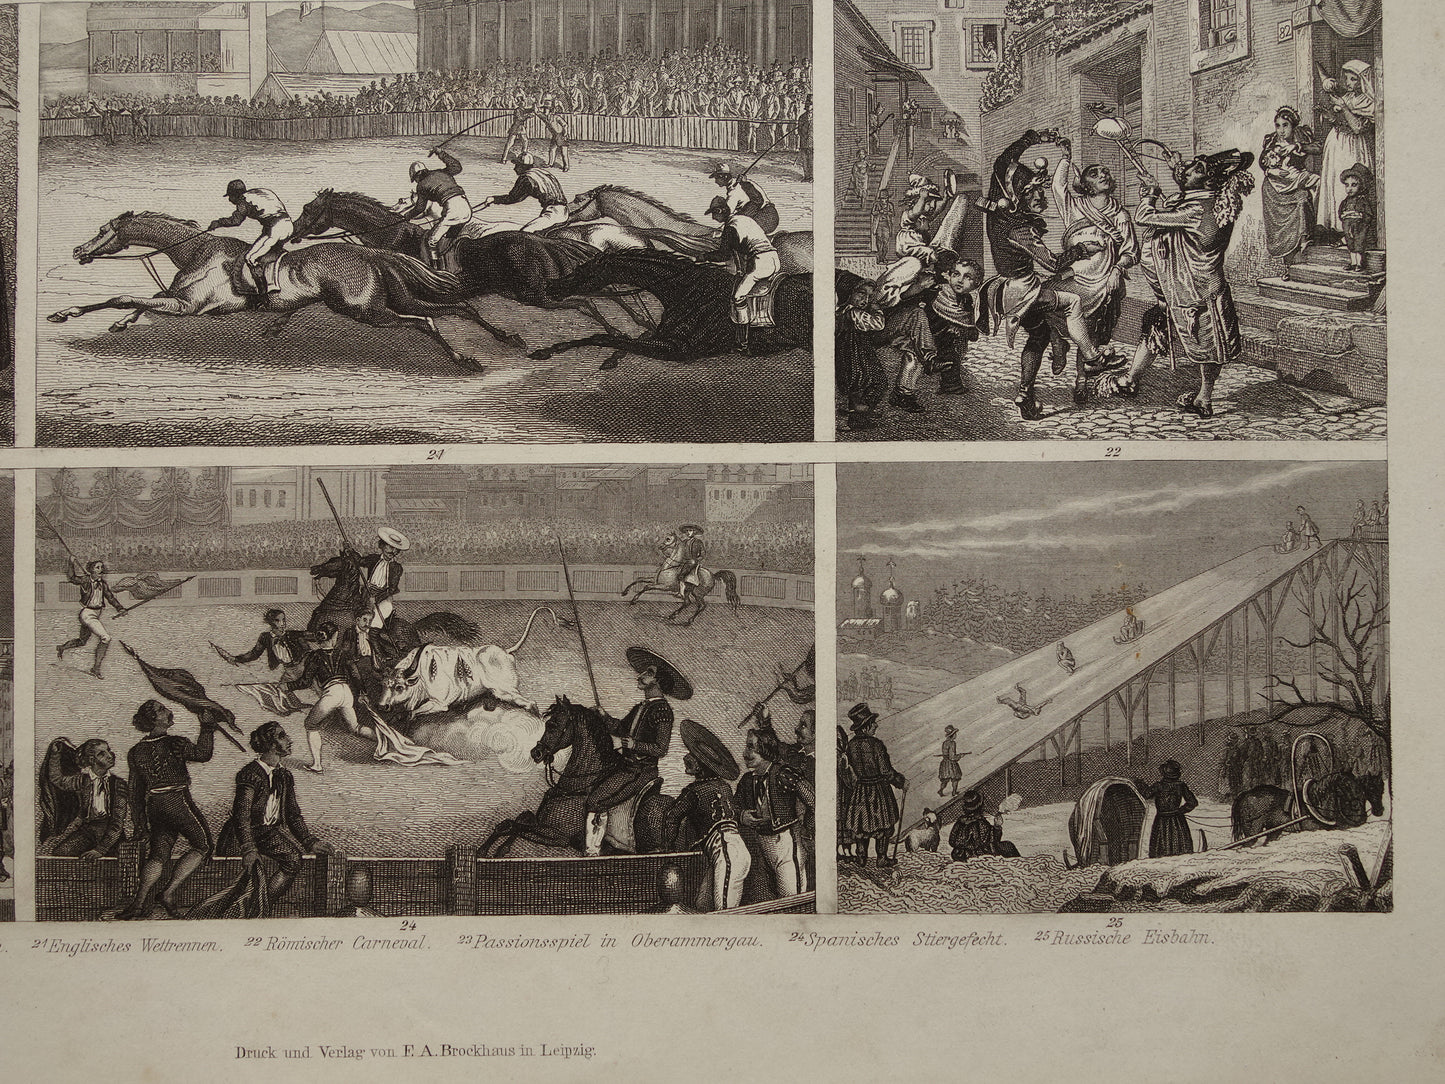 Oude geschiedenis prent klederdracht en vermaak in Europa 15e en 16e eeuw 1870 originele antieke illustratie paardenrace stierengevecht